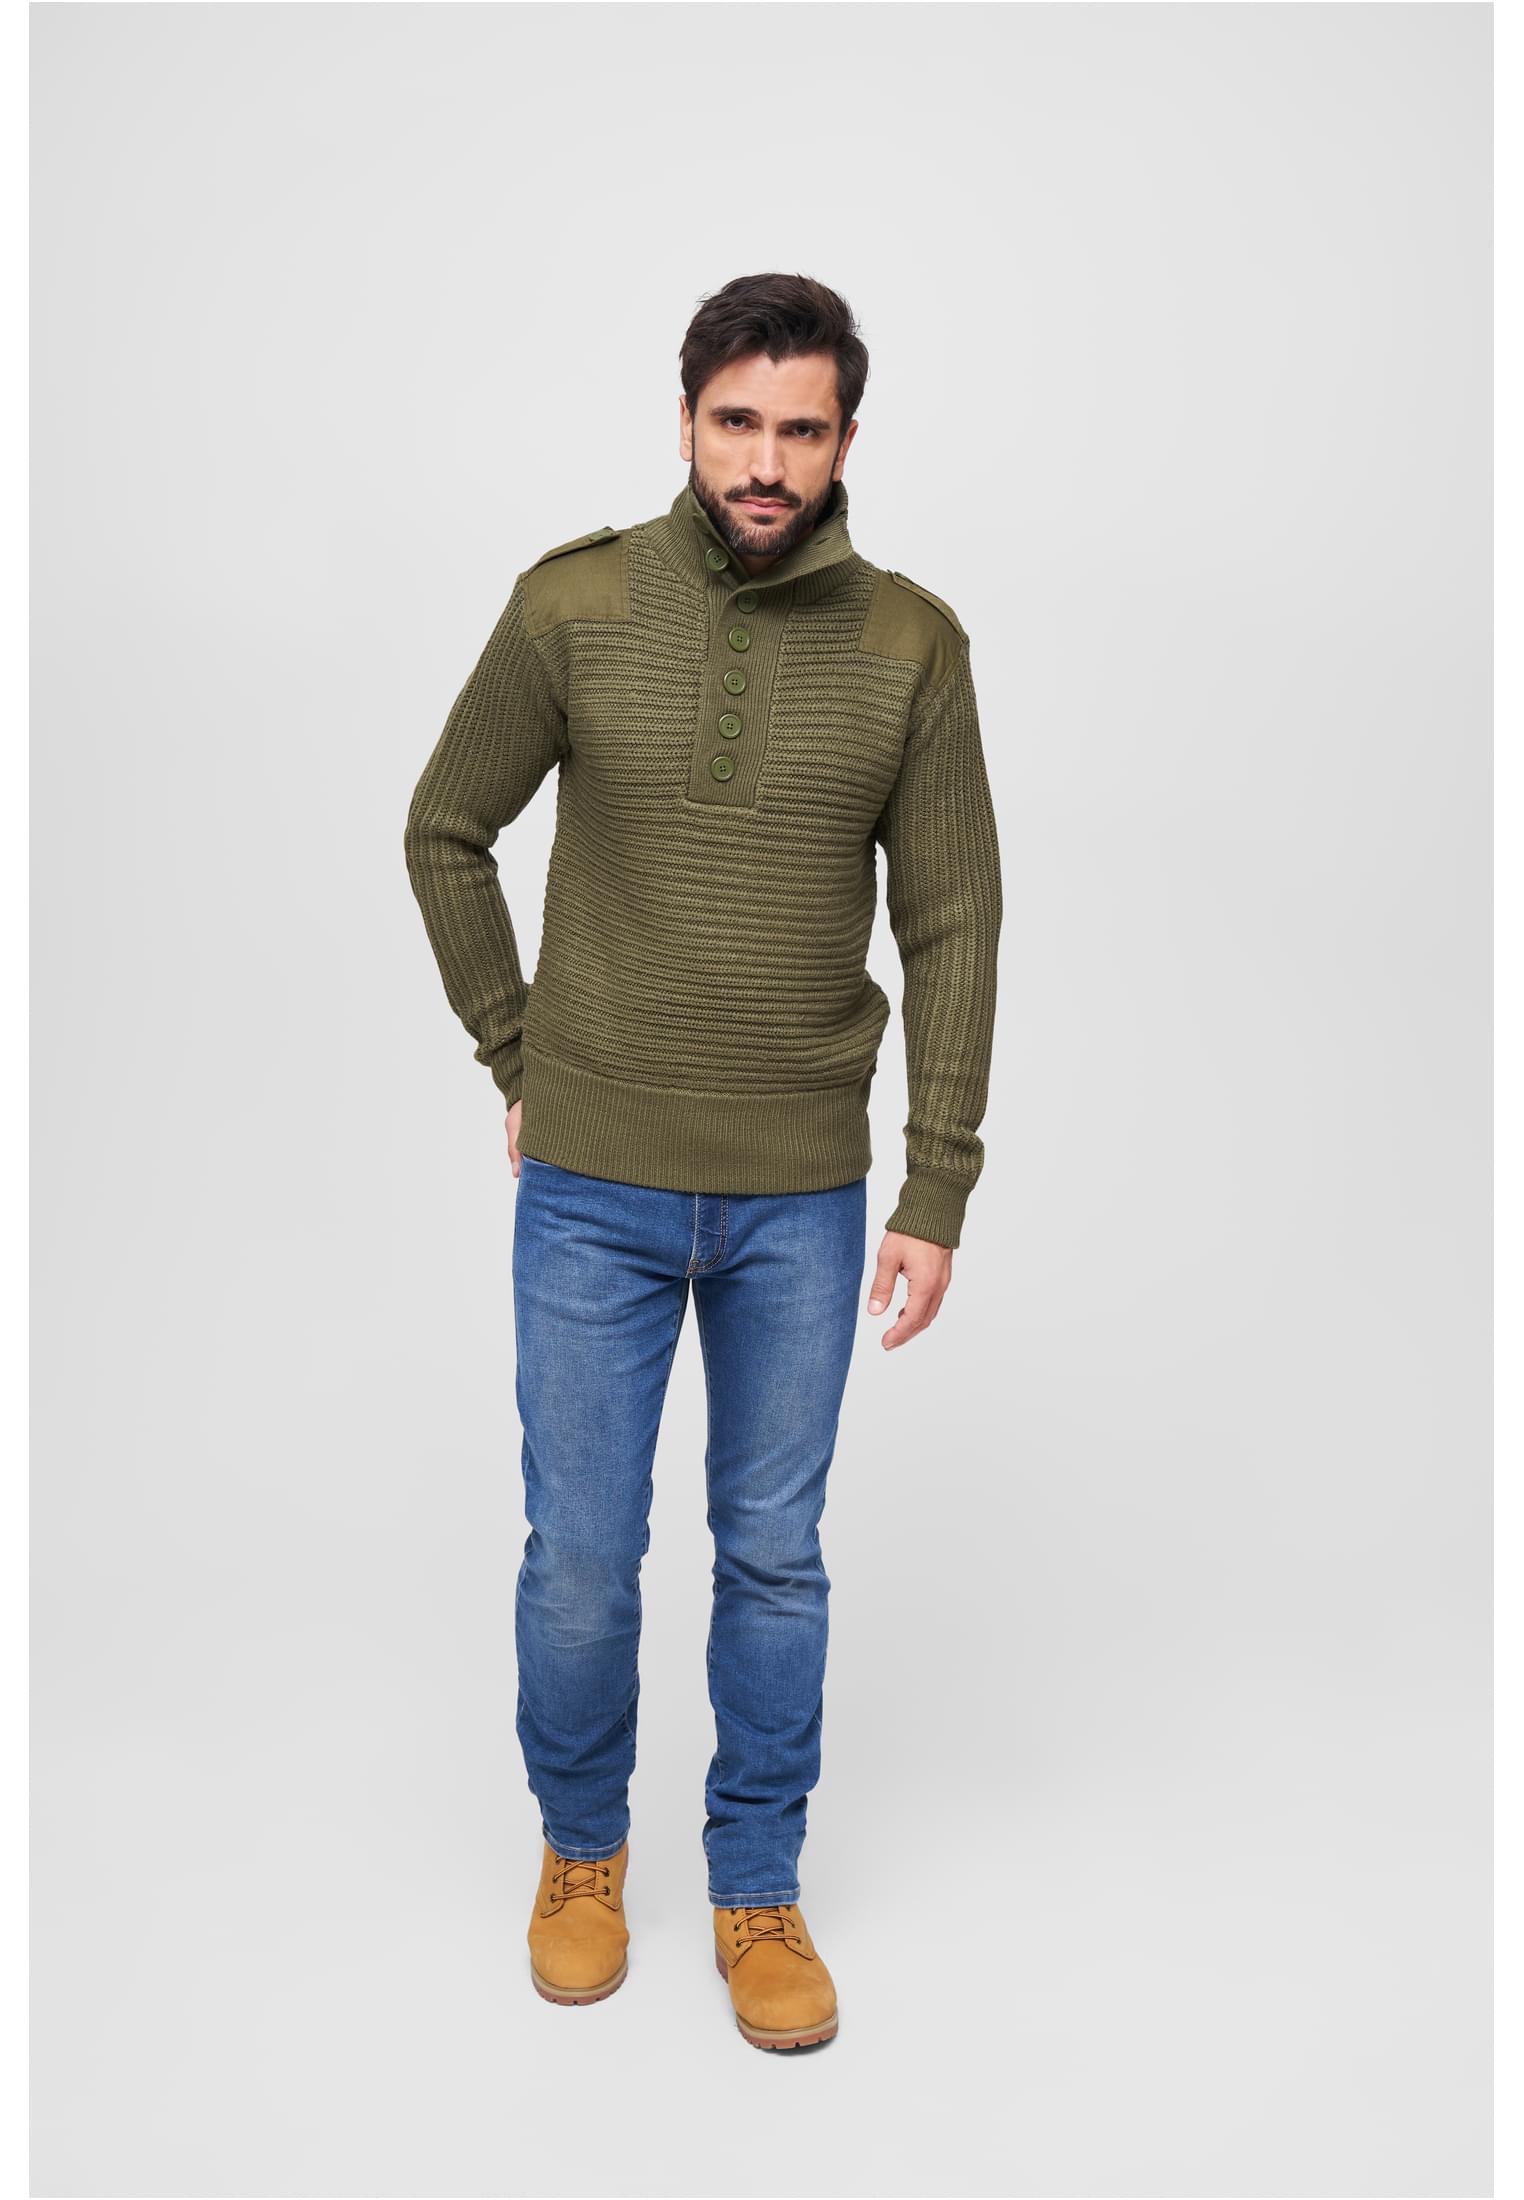 Pullover Alpin Pullover in Farbe olive